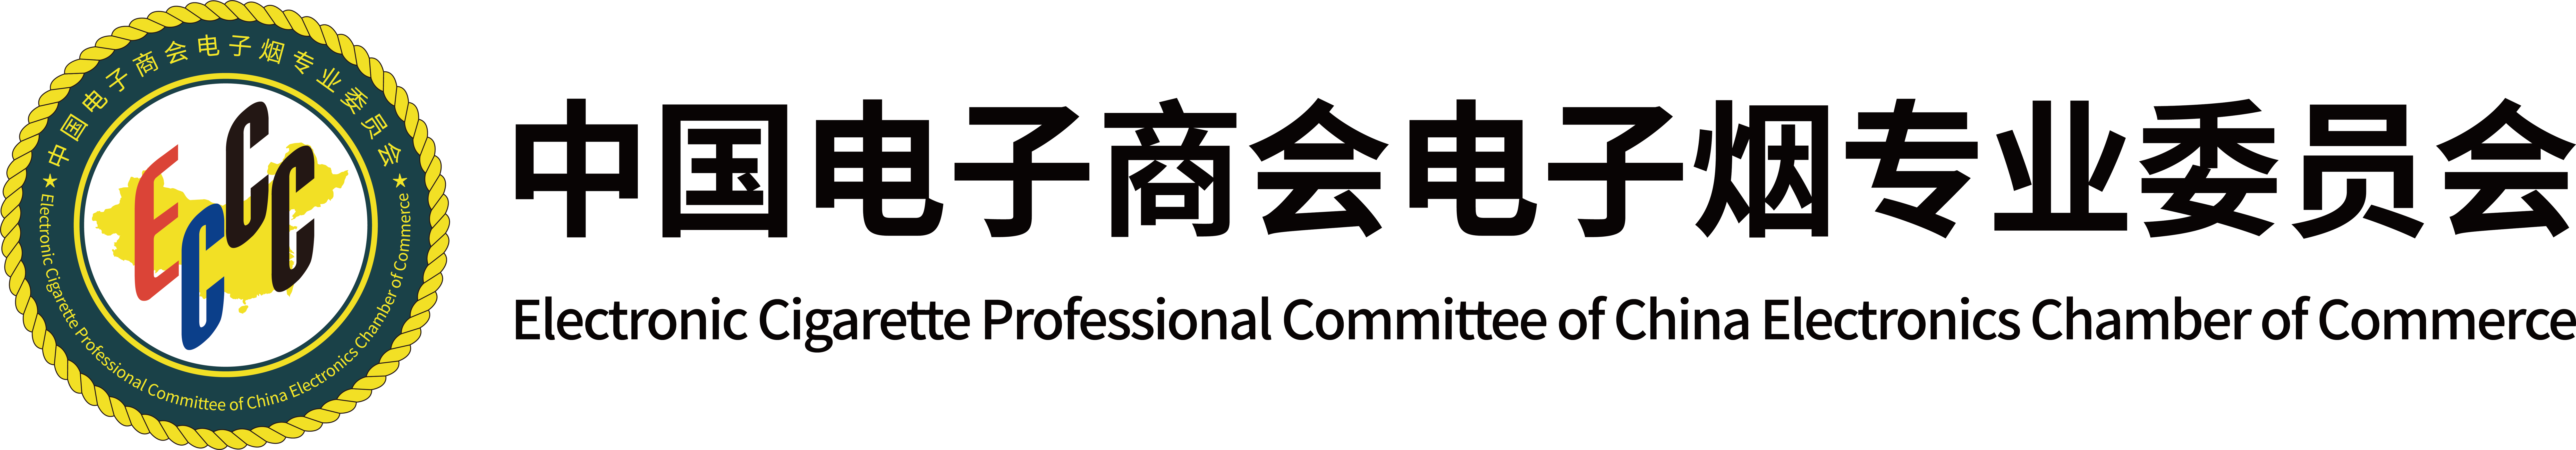 20220407 中国电子商会电子烟专业委员会LOGO-黑